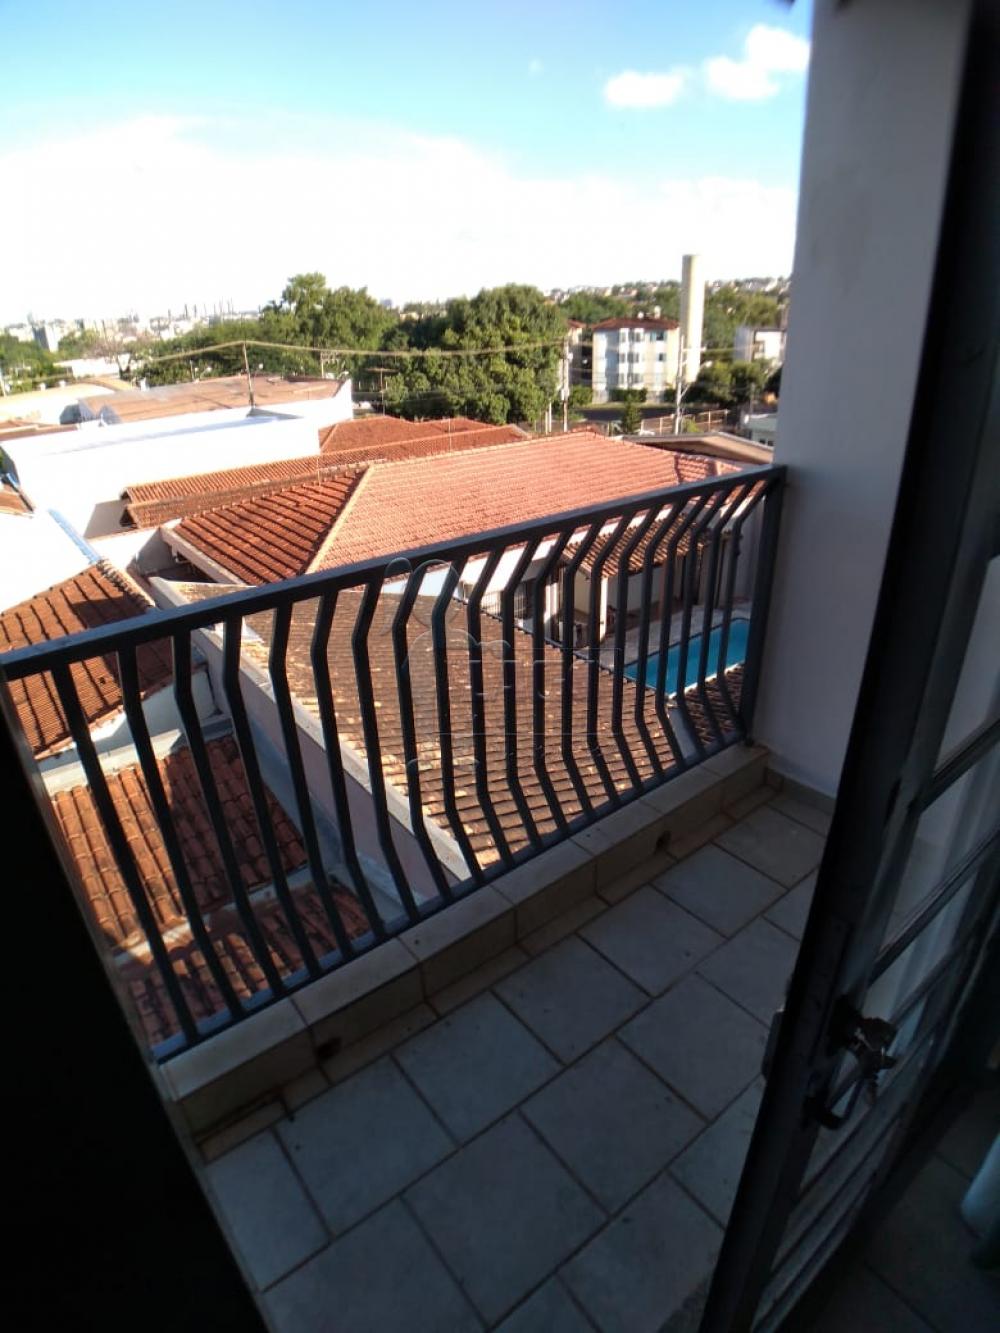 Alugar Apartamentos / Padrão em Ribeirão Preto R$ 980,00 - Foto 2